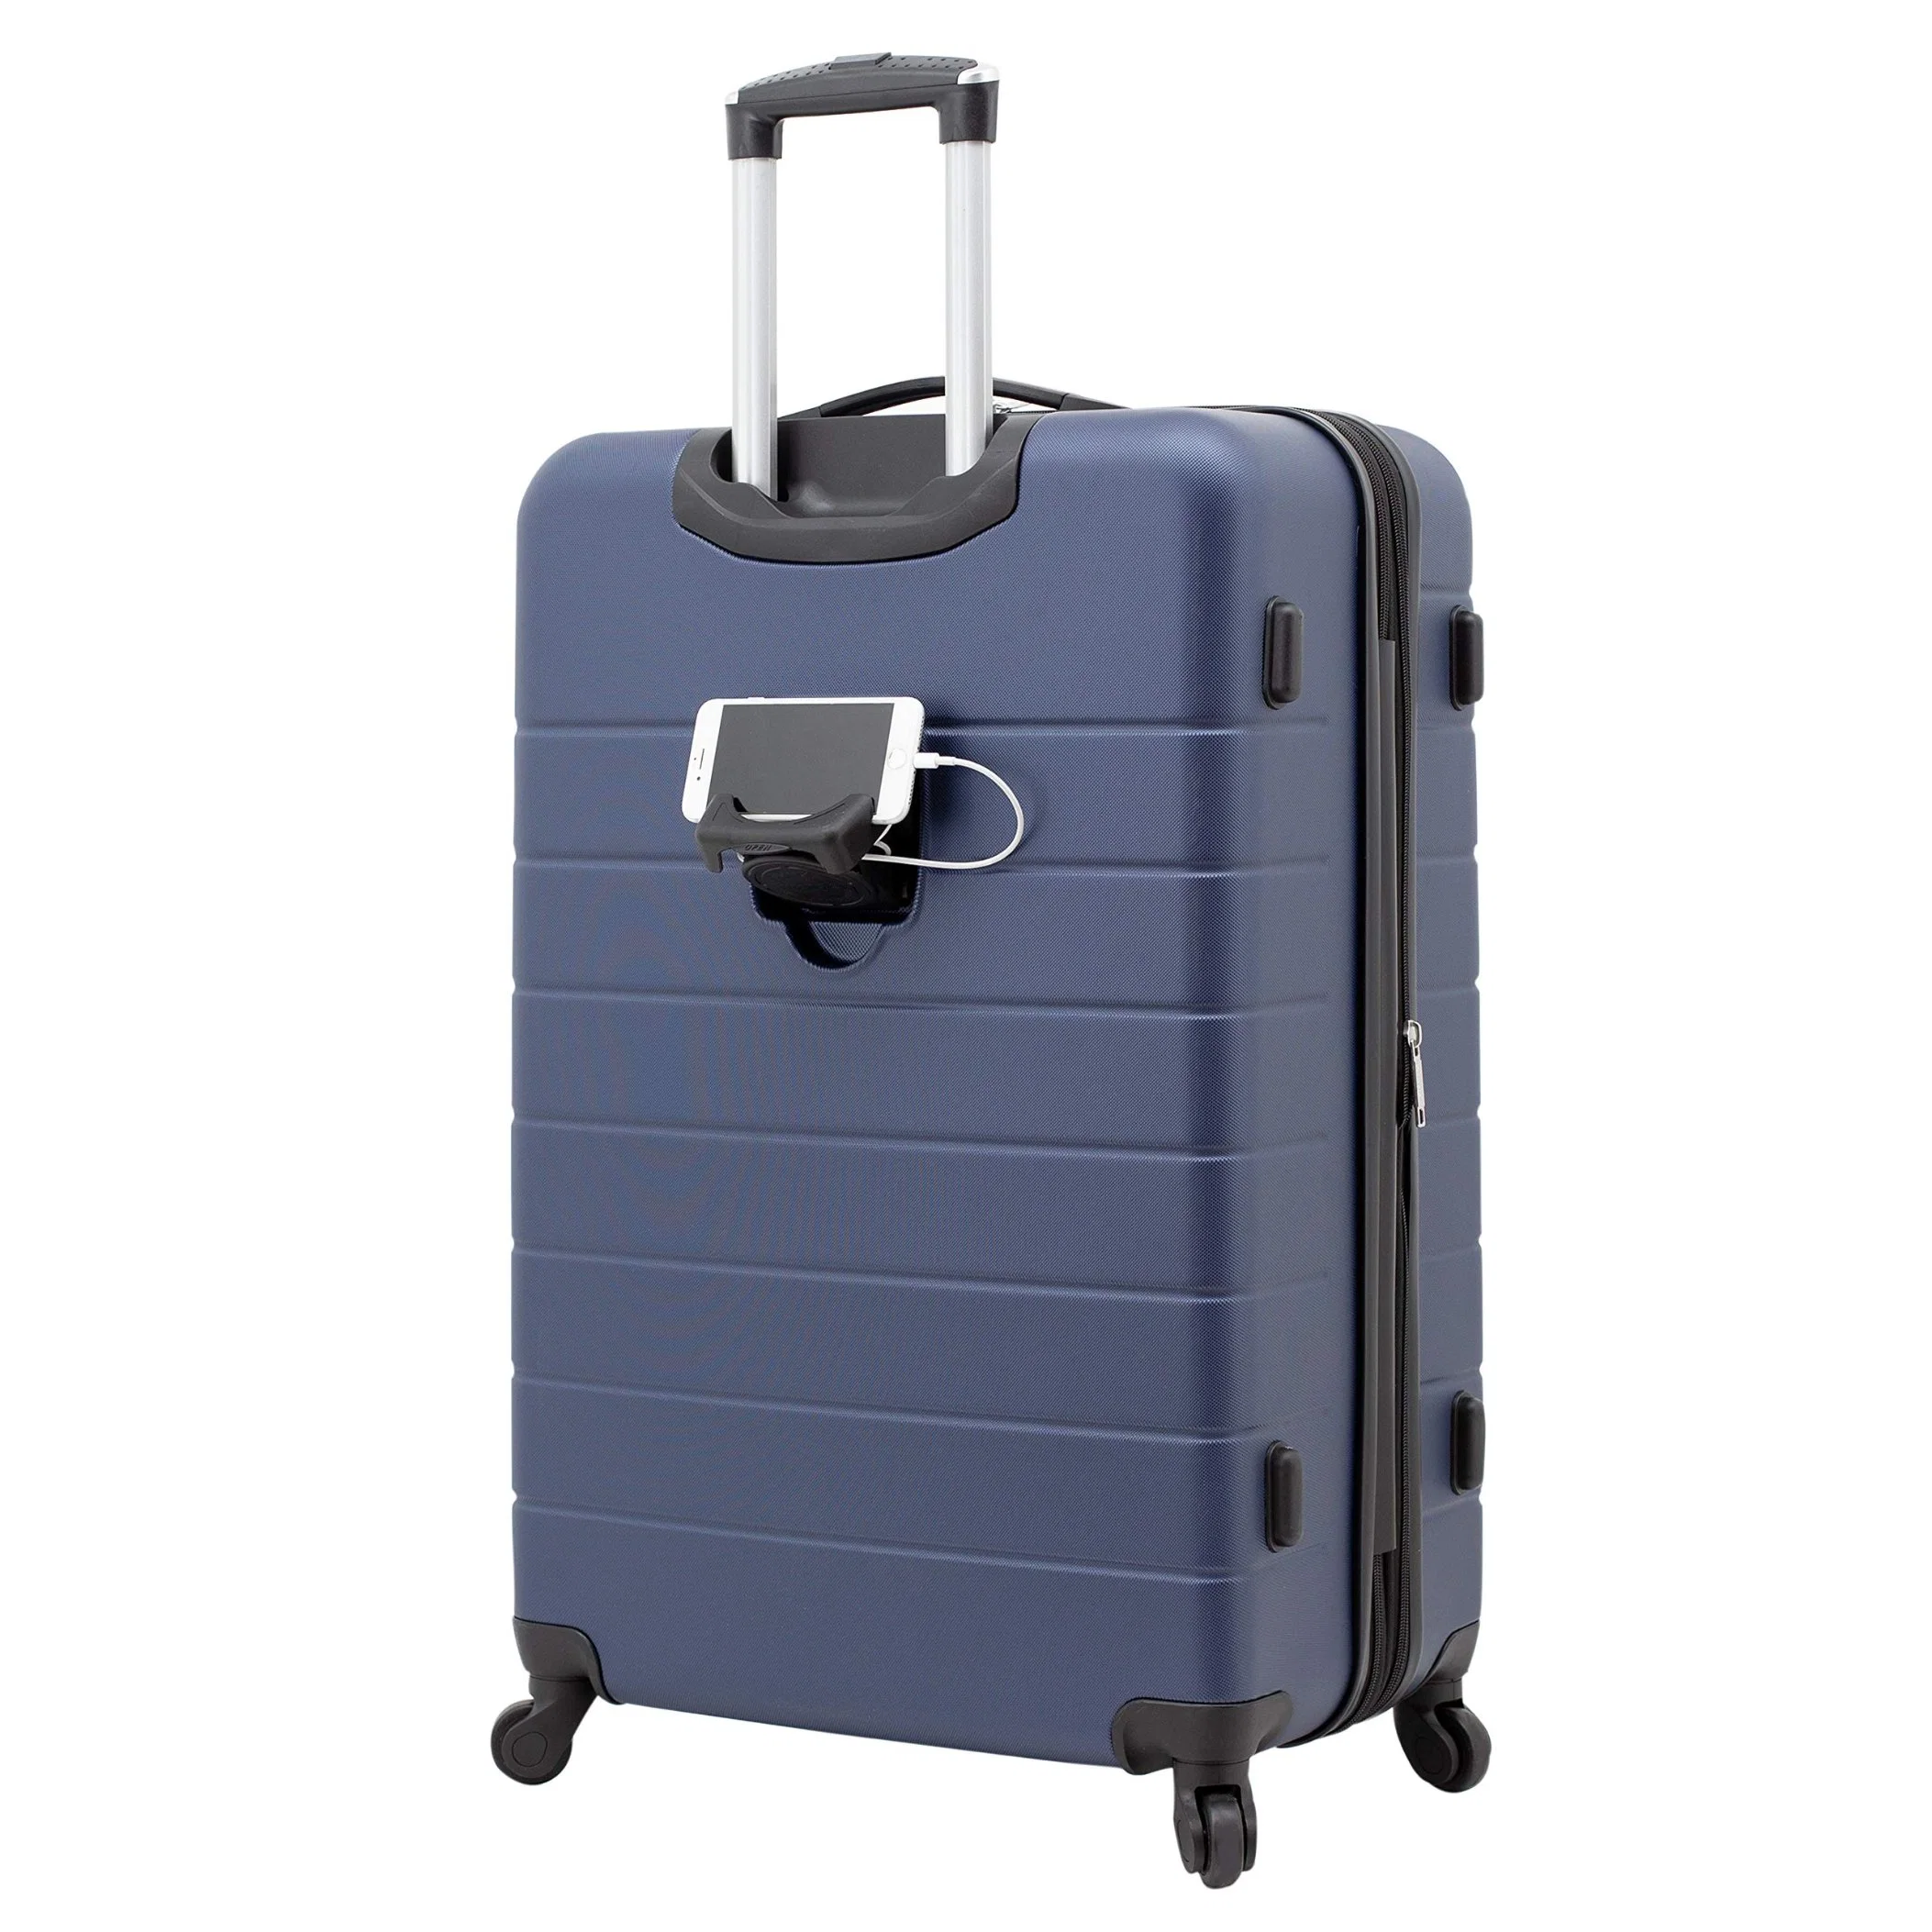 Smart Gepäck-Set mit Cup Holder und USB-Port Navy Blaue Business Case Trolley Gepäcktasche Für Schultaschen